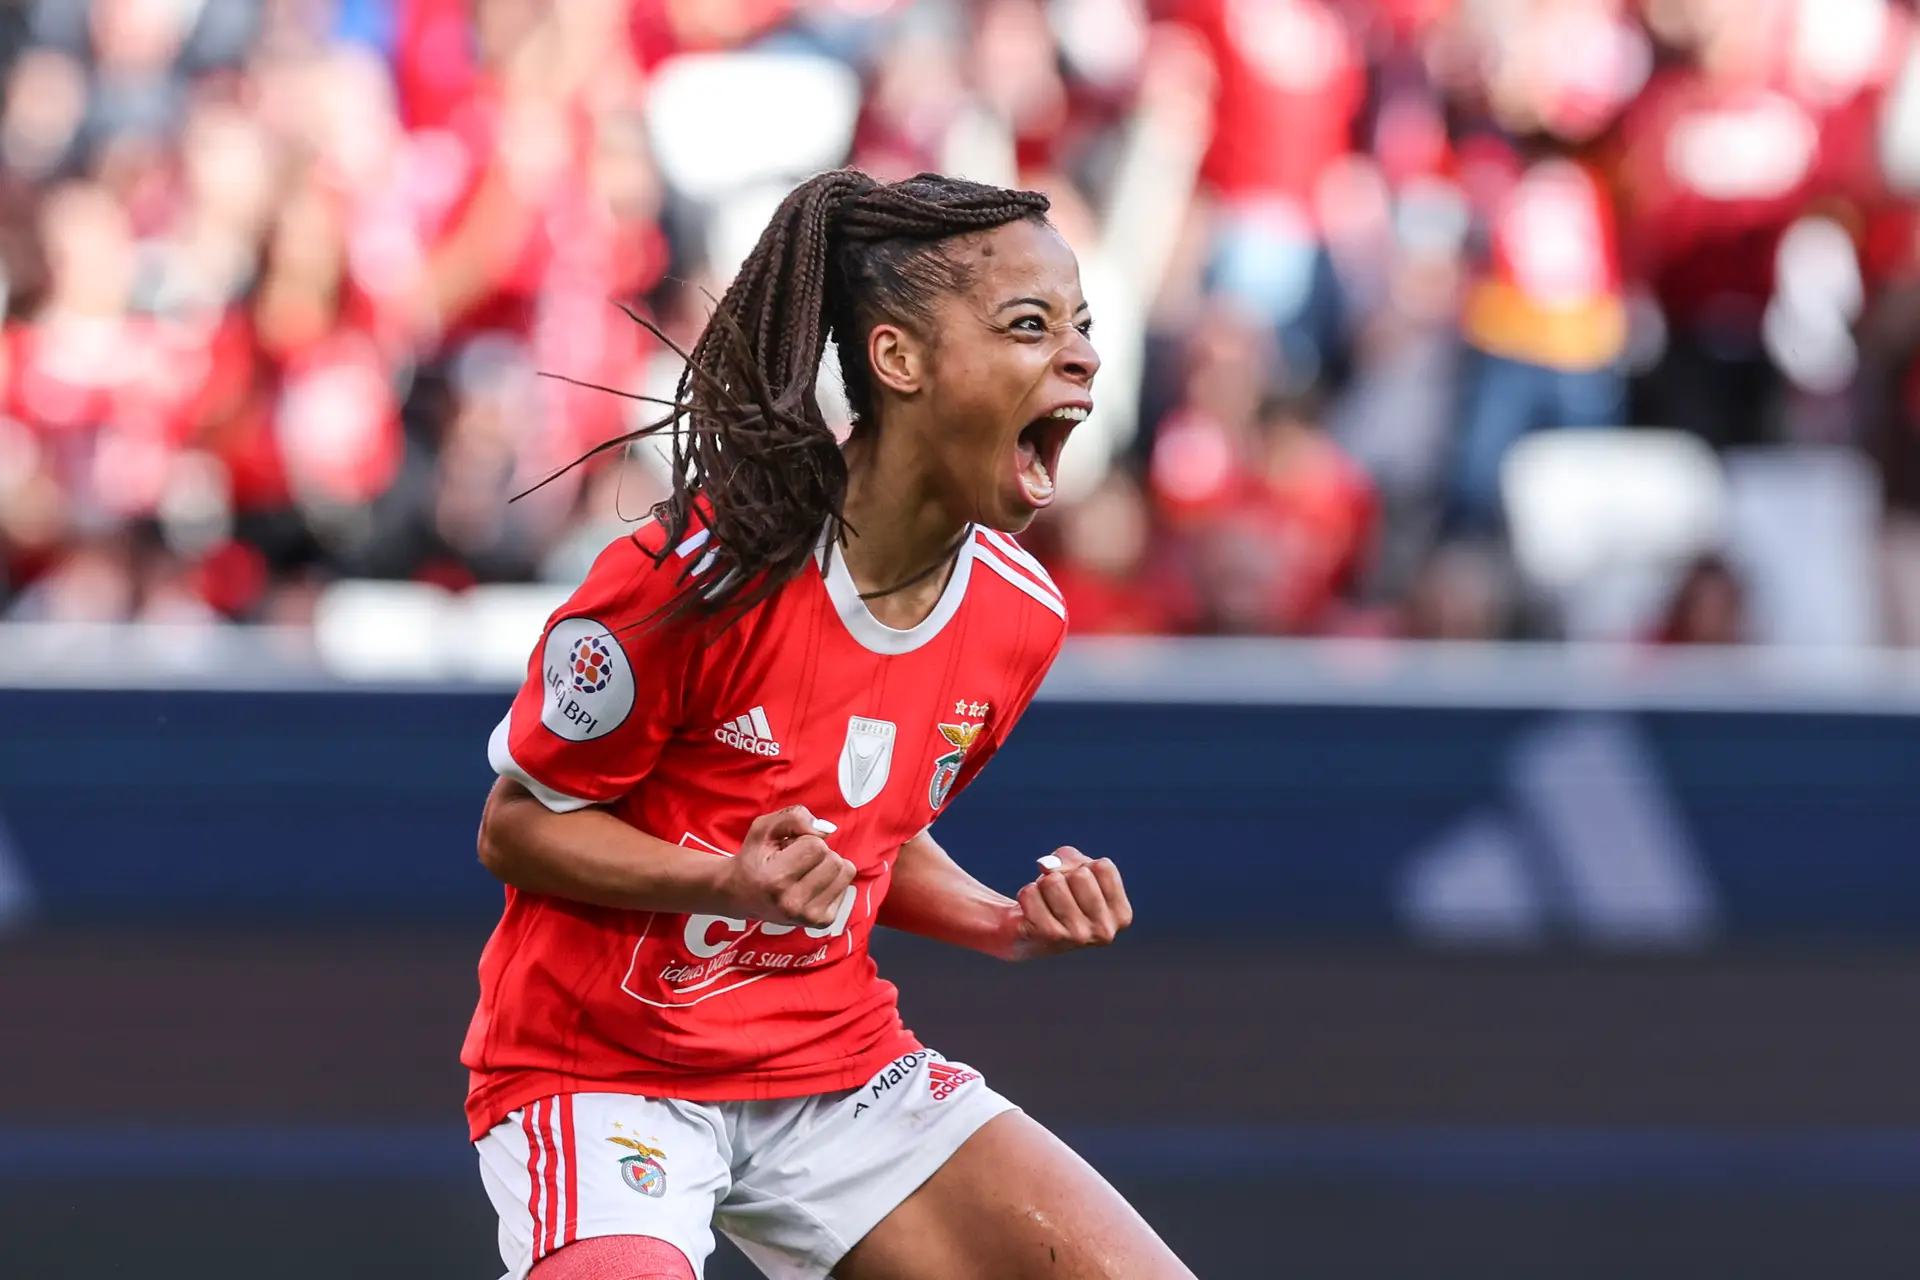 Portugal tem hoje jogo decisivo na Liga das Nações de futebol feminino